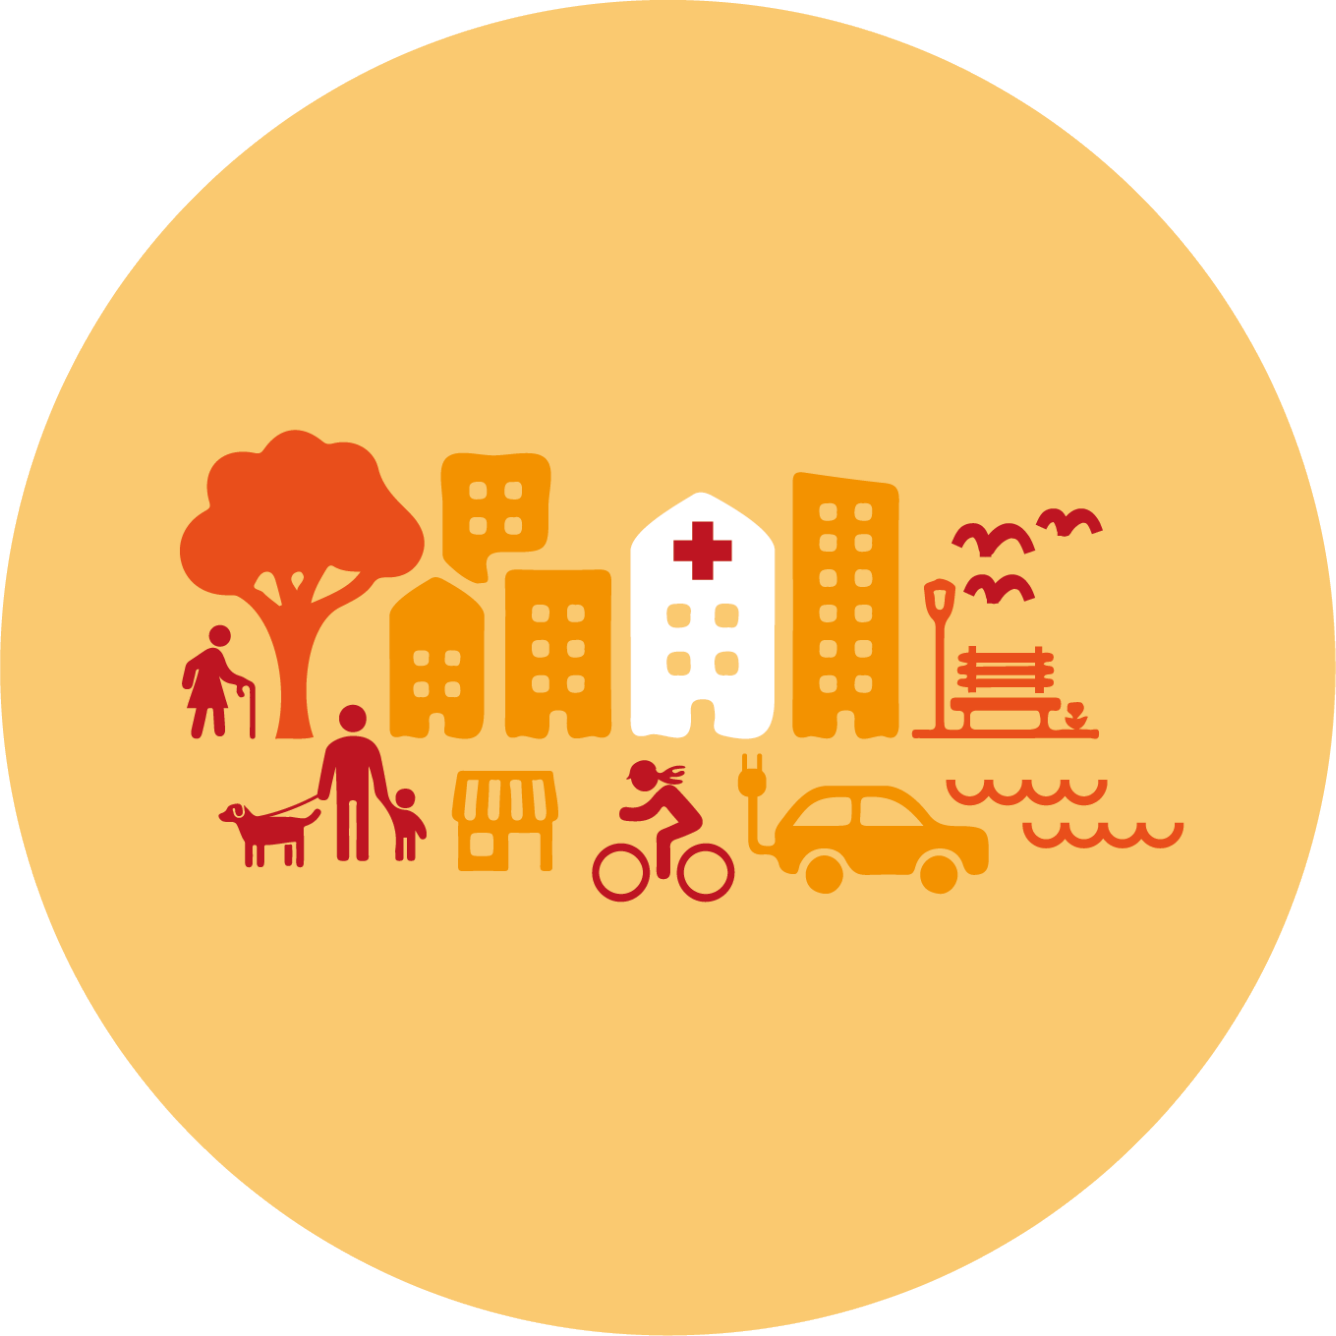 Illustration över träd, hus, cykel, bil och gående samt vatten, i centrum en sjukhusbyggnad med rött kors.